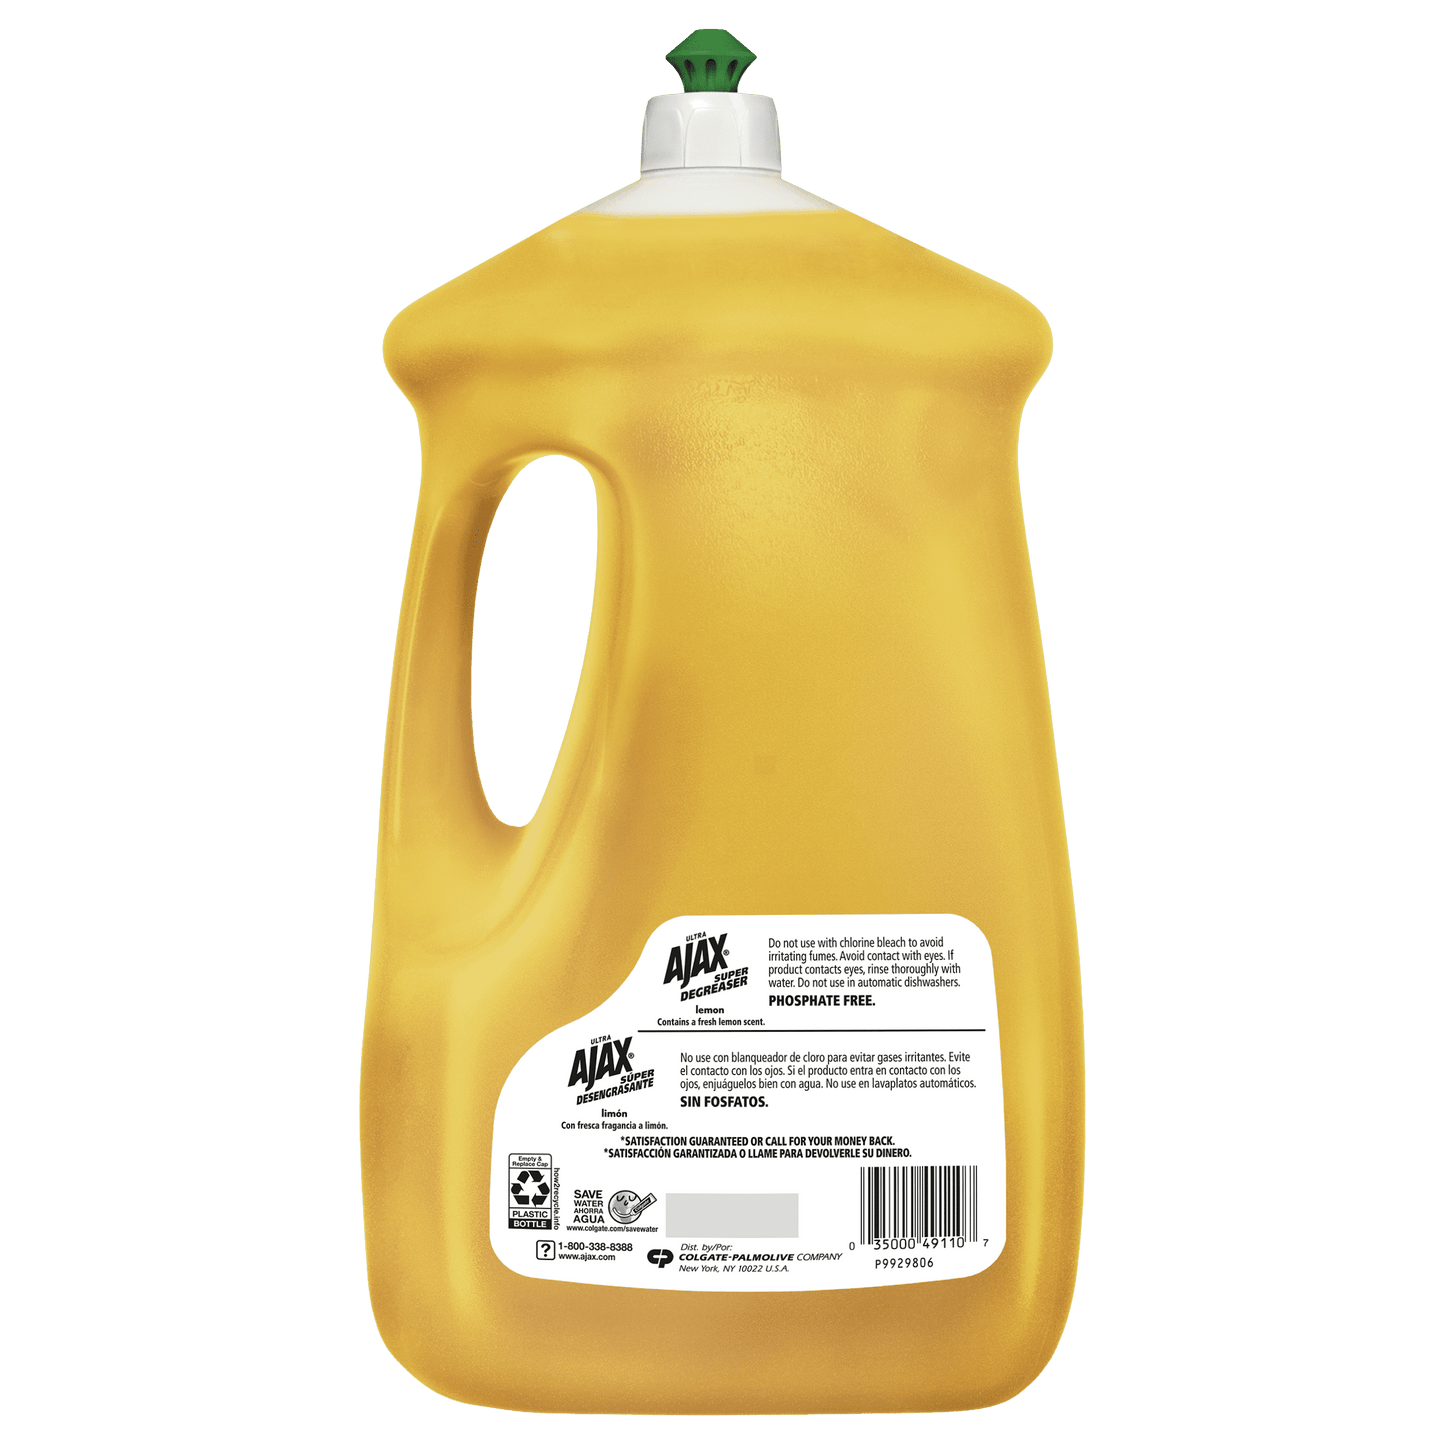 Ajax Ultra Super Degreaser Liquid Dish Soap, Lemon Scent - 90 Fluid Ounce